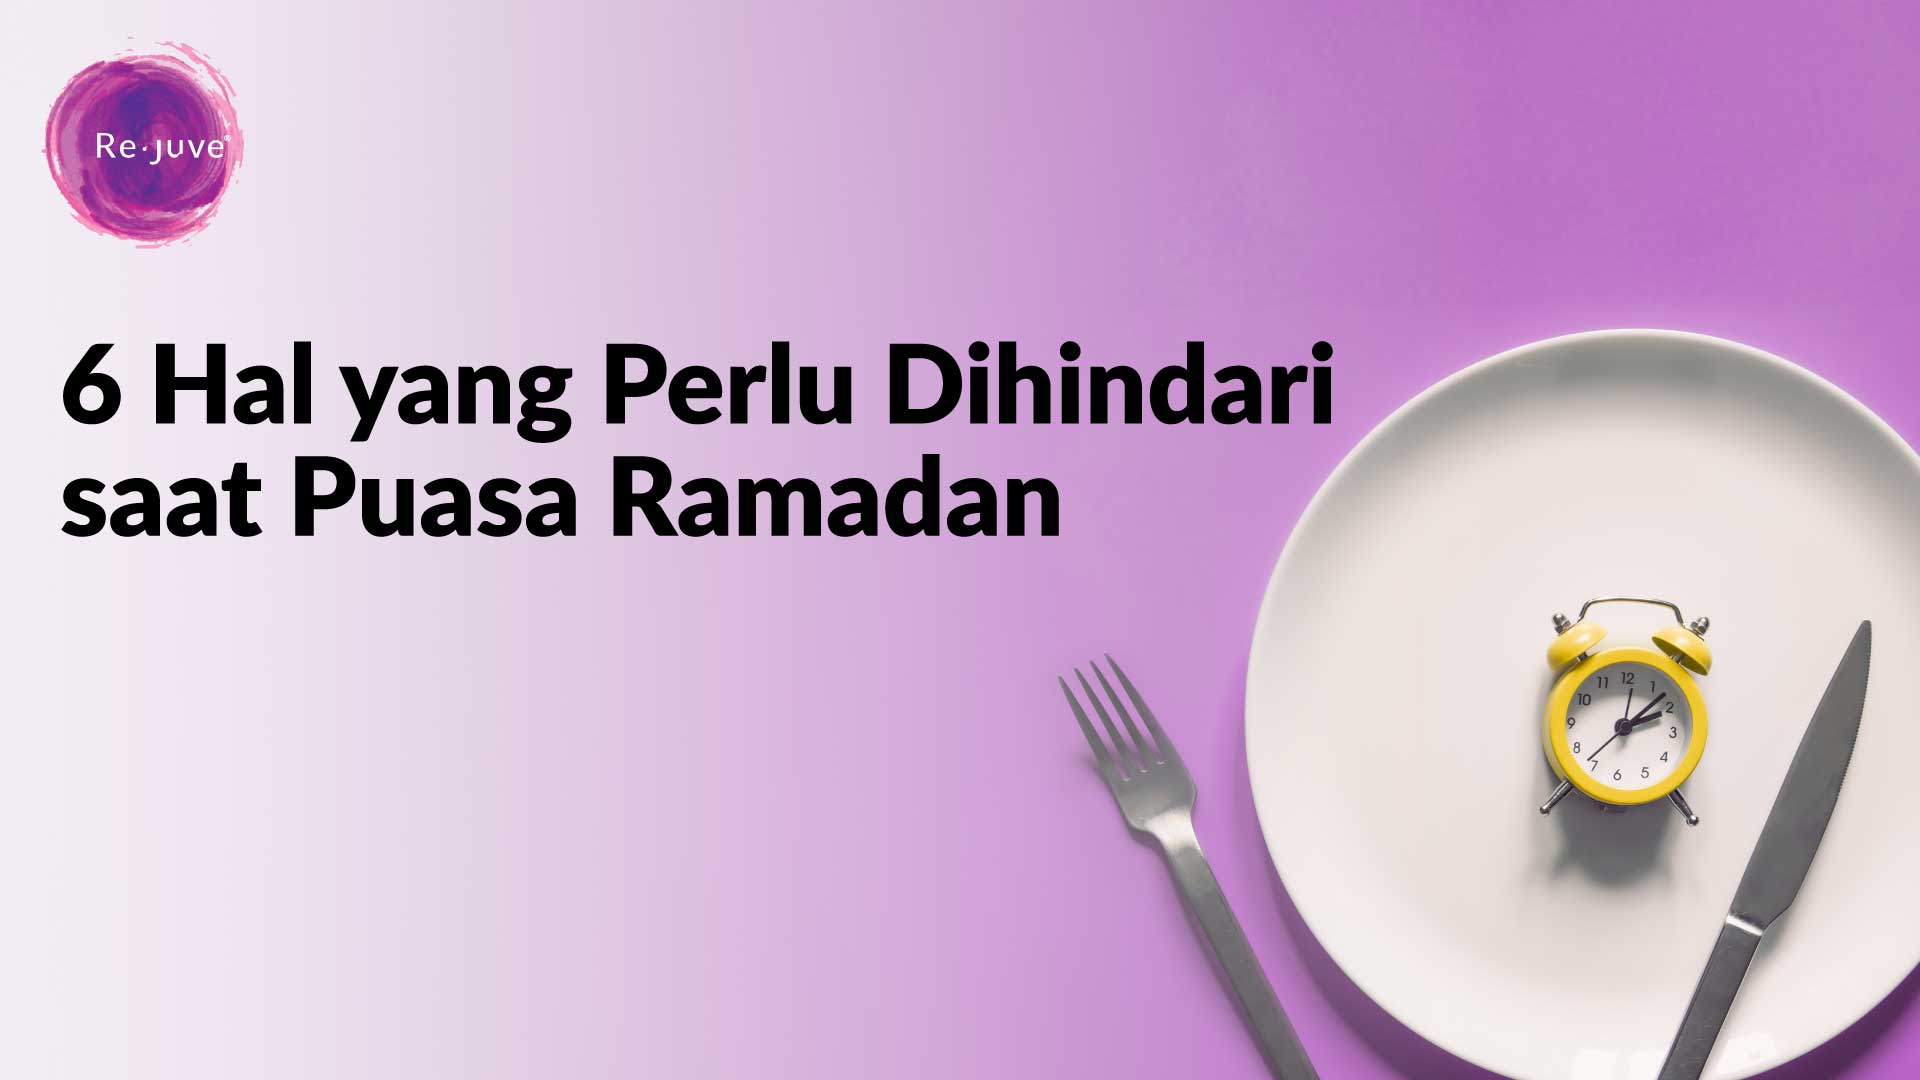 Hal yang Perlu Dihindari saat Puasa Ramadan